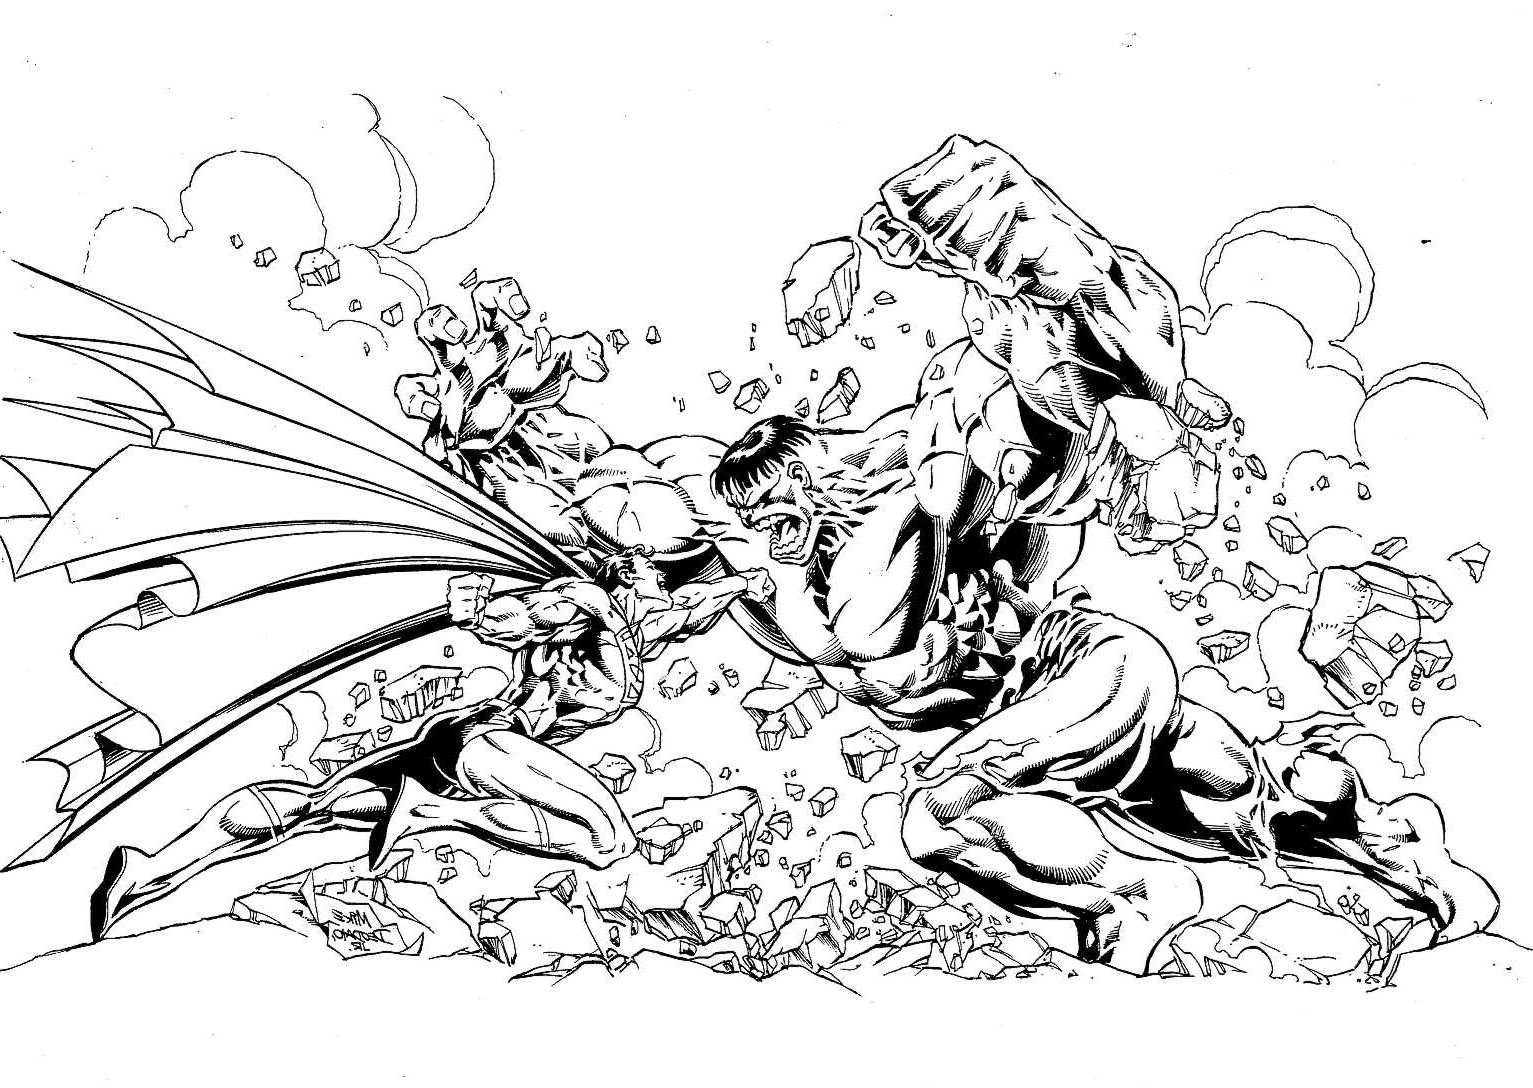 Un combattimento incredibile! Chi vincerà tra questi due supereroi? Hulk (della Marvel) o Superman (della DC Comics)?